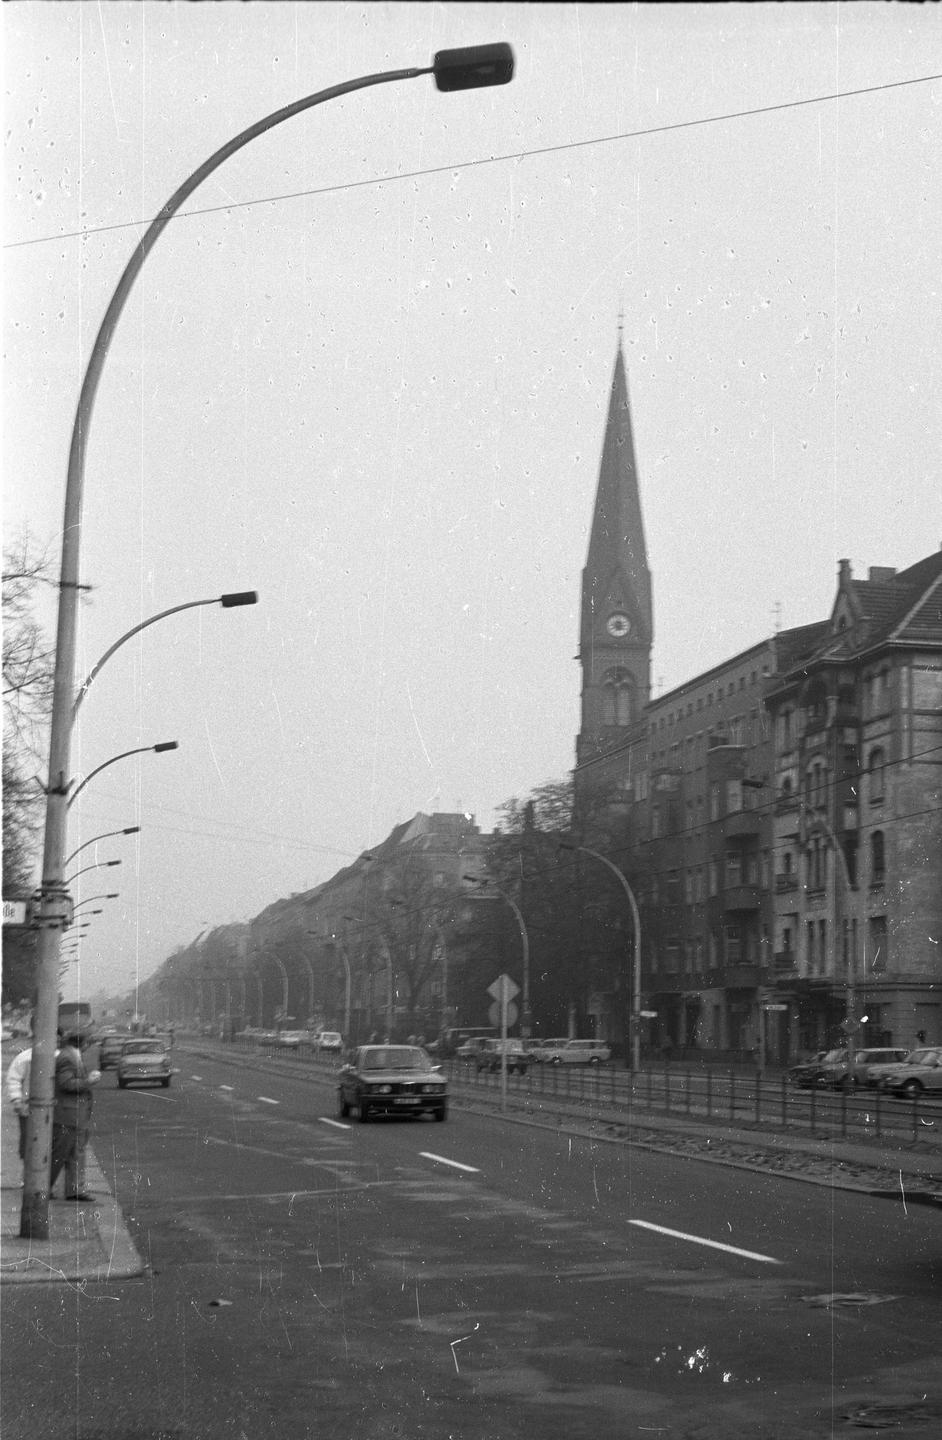 Prenzlauer Allee mit der Immanuelkirche in Berlin-Prenzlauer Berg (Schwarzweißbild)